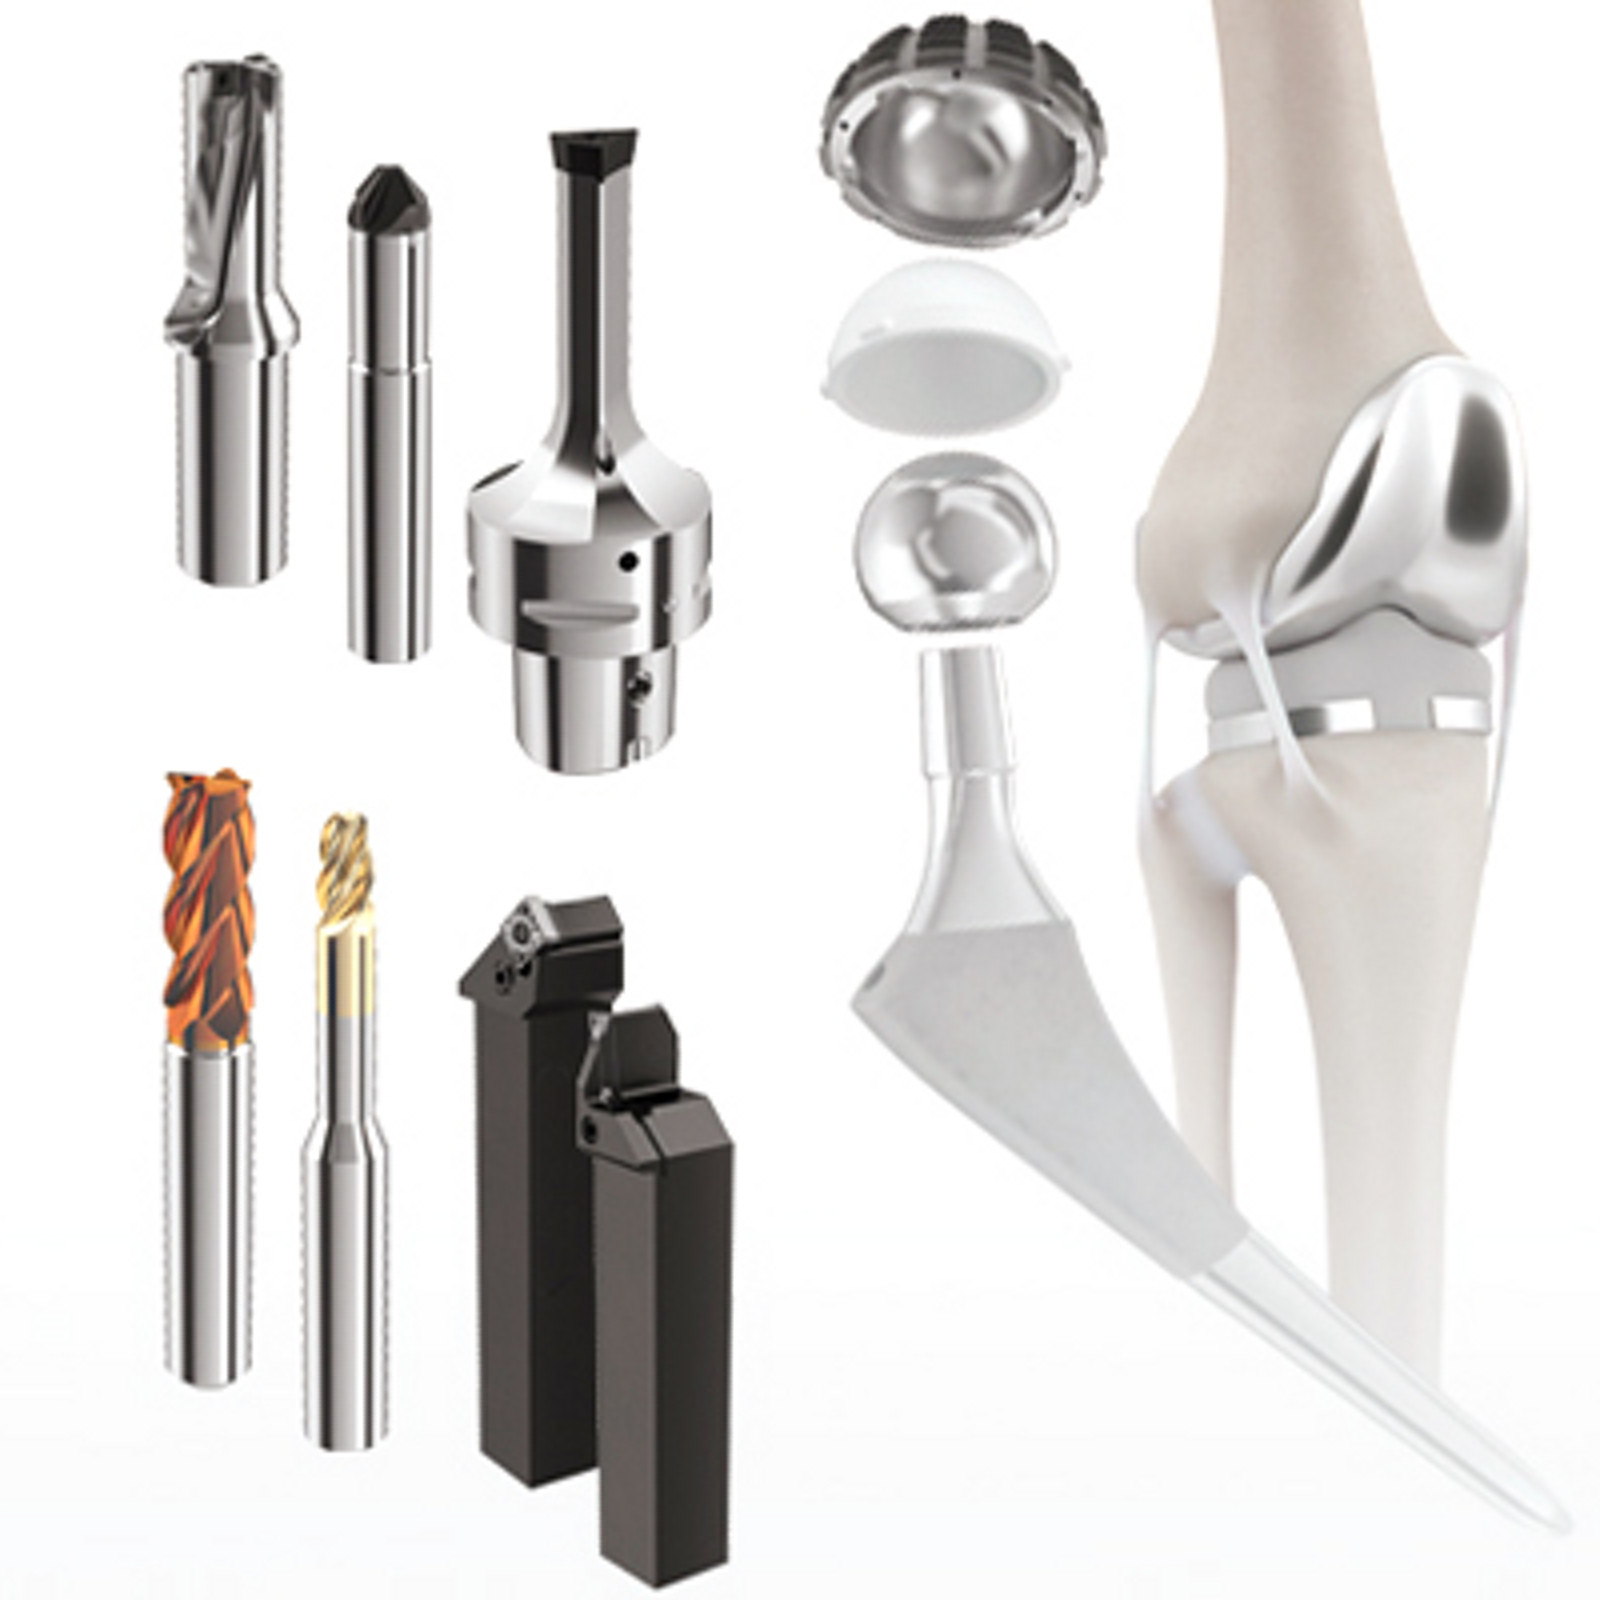 Soluciones de herramientas de corte para componentes de tecnología médica